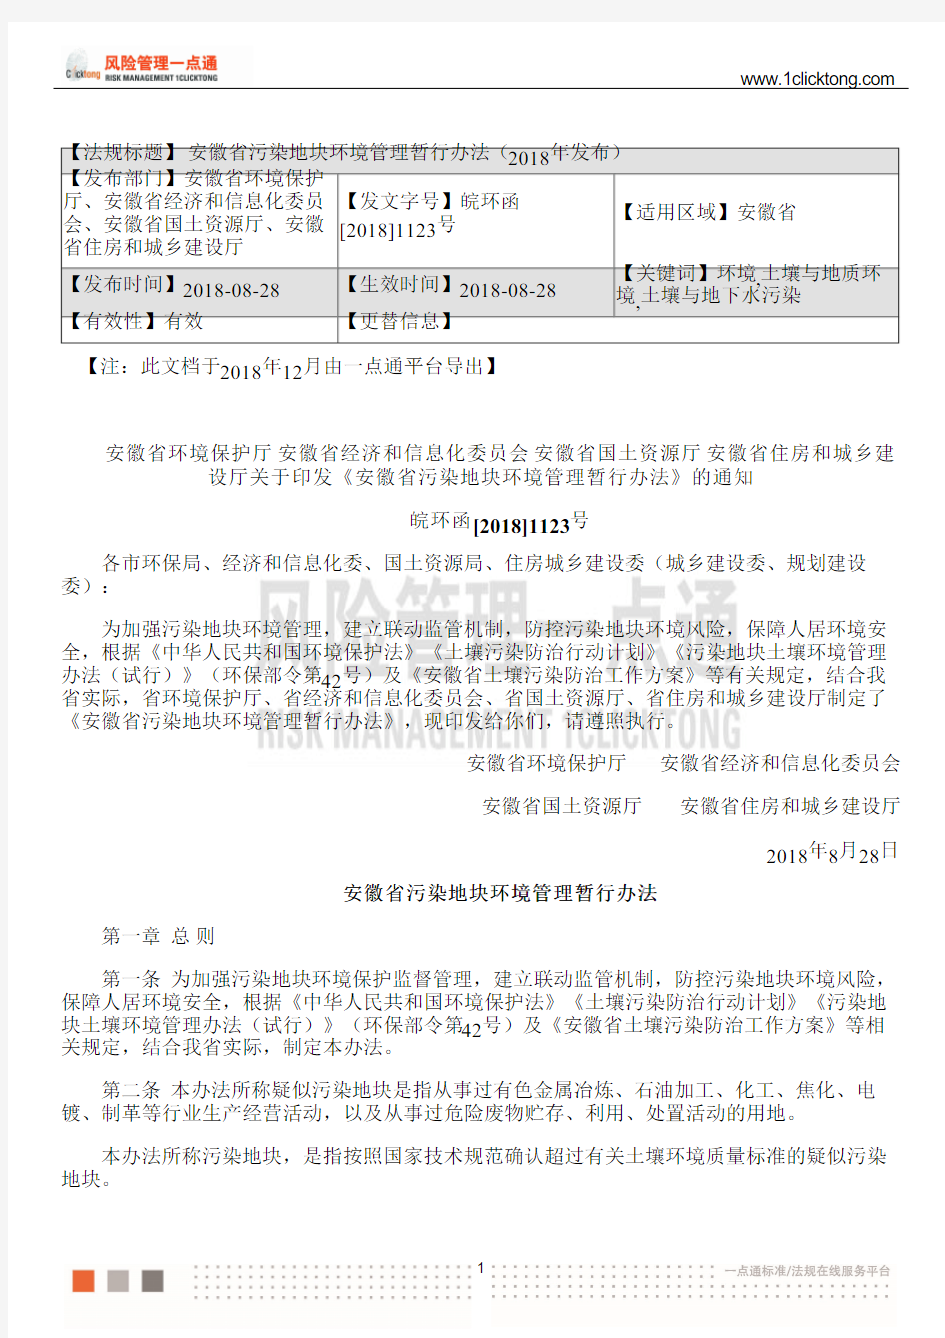 安徽省污染地块环境管理暂行办法(2018年发布)